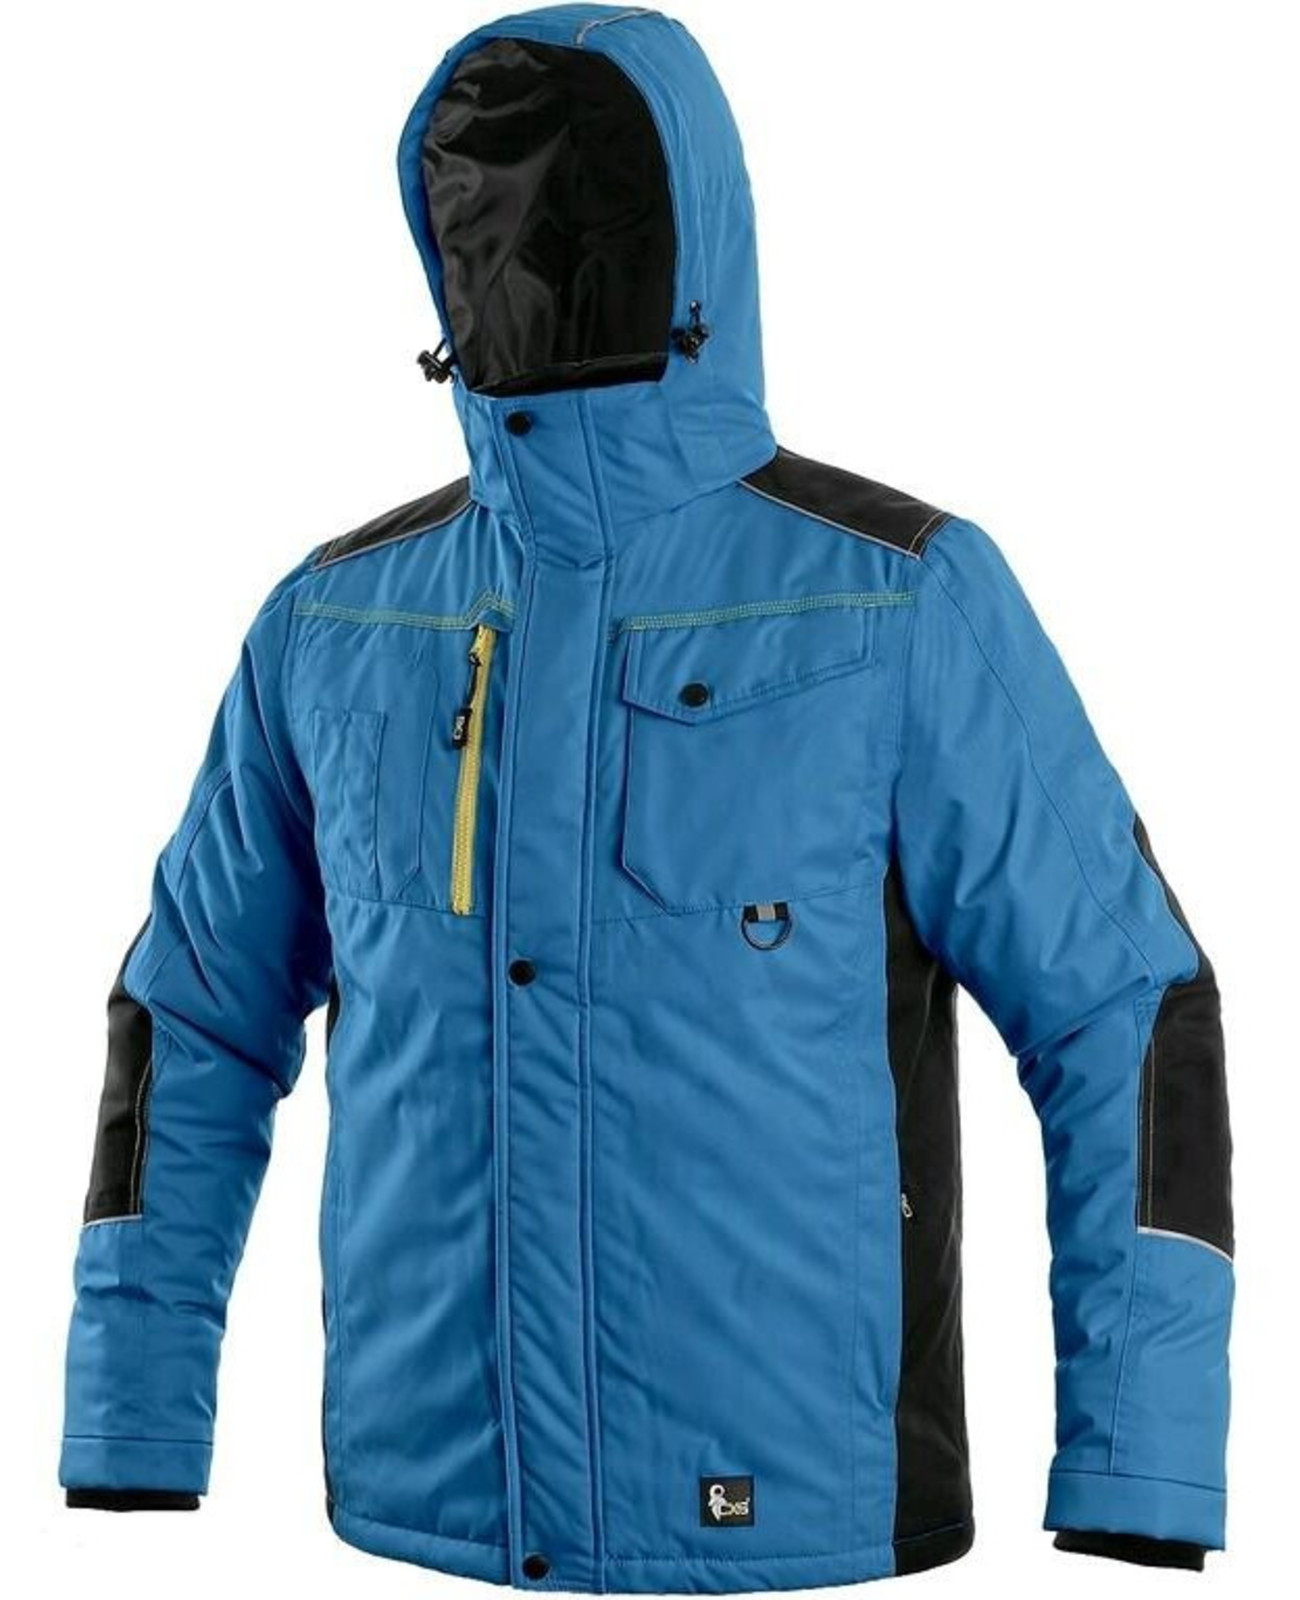 Zimná pracovná bunda CXS Baltimore - veľkosť: S, farba: modrá/čierna